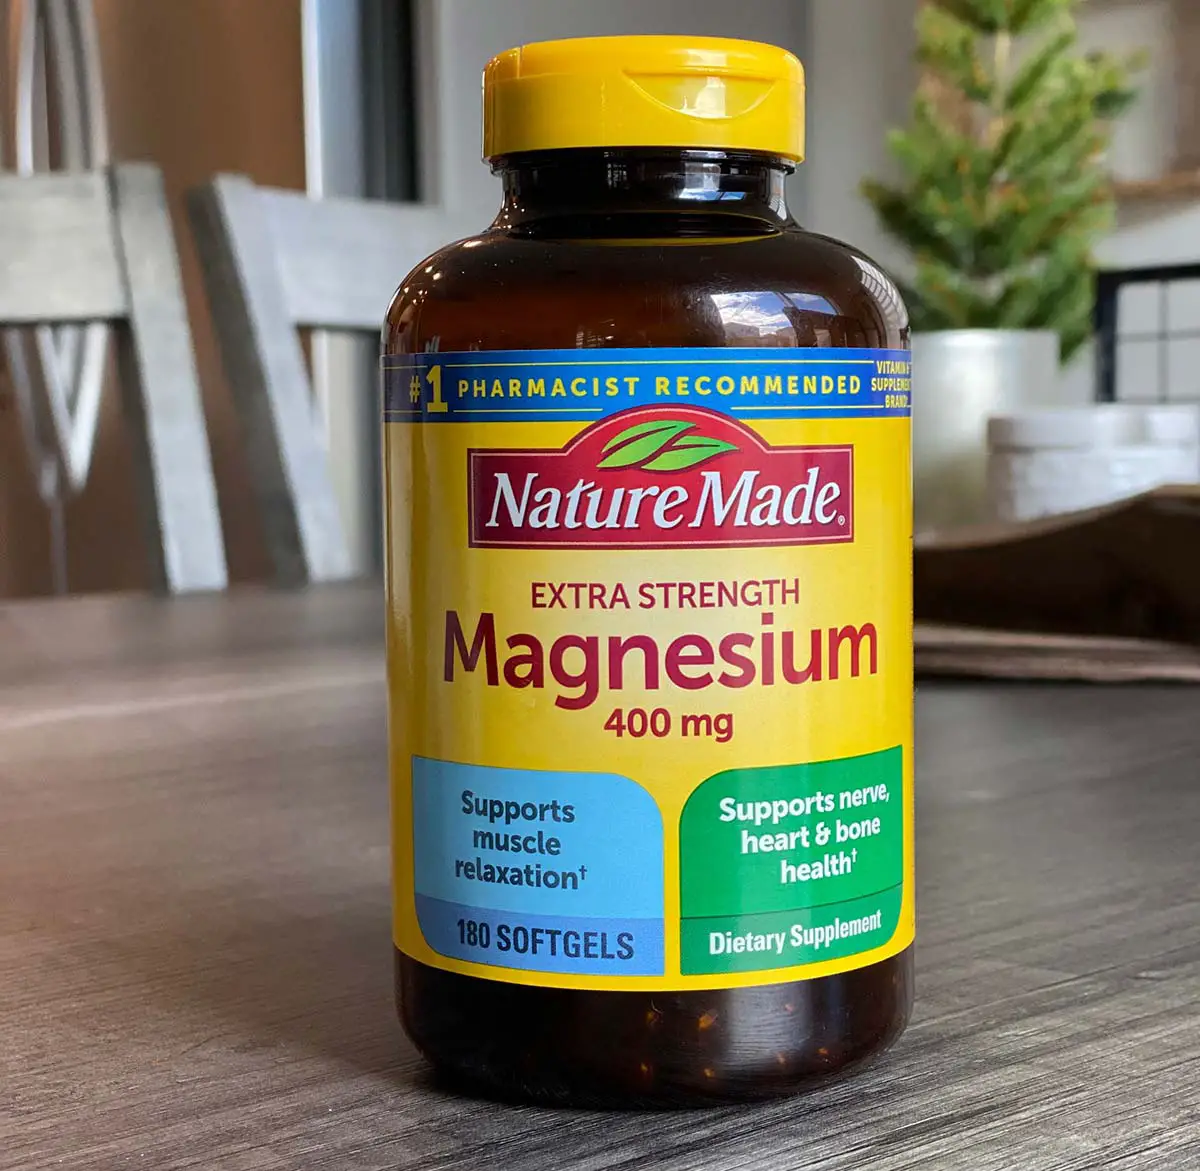 NatureMade Magnesium Bottle